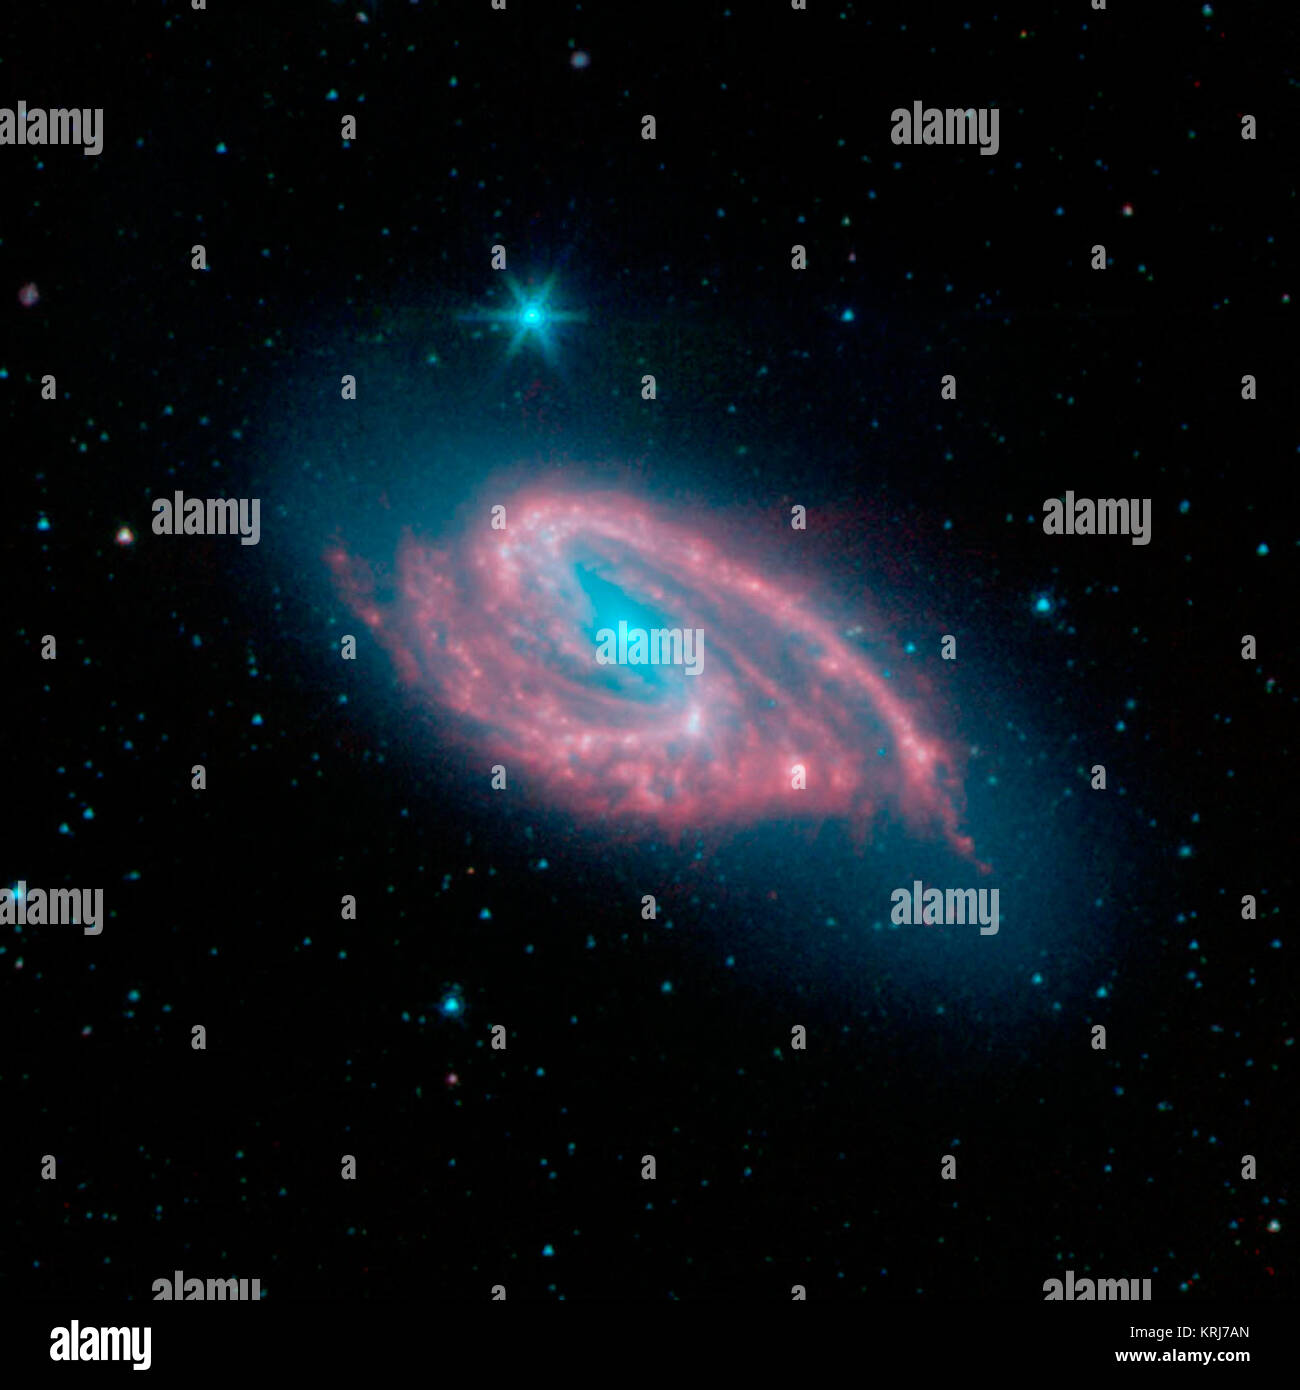 Questa immagine della galassia a spirale NGC 3627, noto anche come Messier 66, è stata catturata dal Spitzer infrarosso vicino Galaxy Survey (canta) Legacy Project utilizzando il telescopio ad infrarossi fotocamera Array (IRAC). NGC 3627 è stimato a 30 milioni di anni luce distante e visto verso la costellazione del Leone. Gli astronomi hanno il sospetto che la galassia forma distorta è dovuta alle sue continue interazioni gravitazionali con i suoi vicini Messier 65 e NGC 3628. NGC 3627 è un altro brillante esempio di banditi galassia a spirale, il tipo più comune di disco galaxy nell'universo locale. Il suo nucleo blu e il bar-come struc Foto Stock